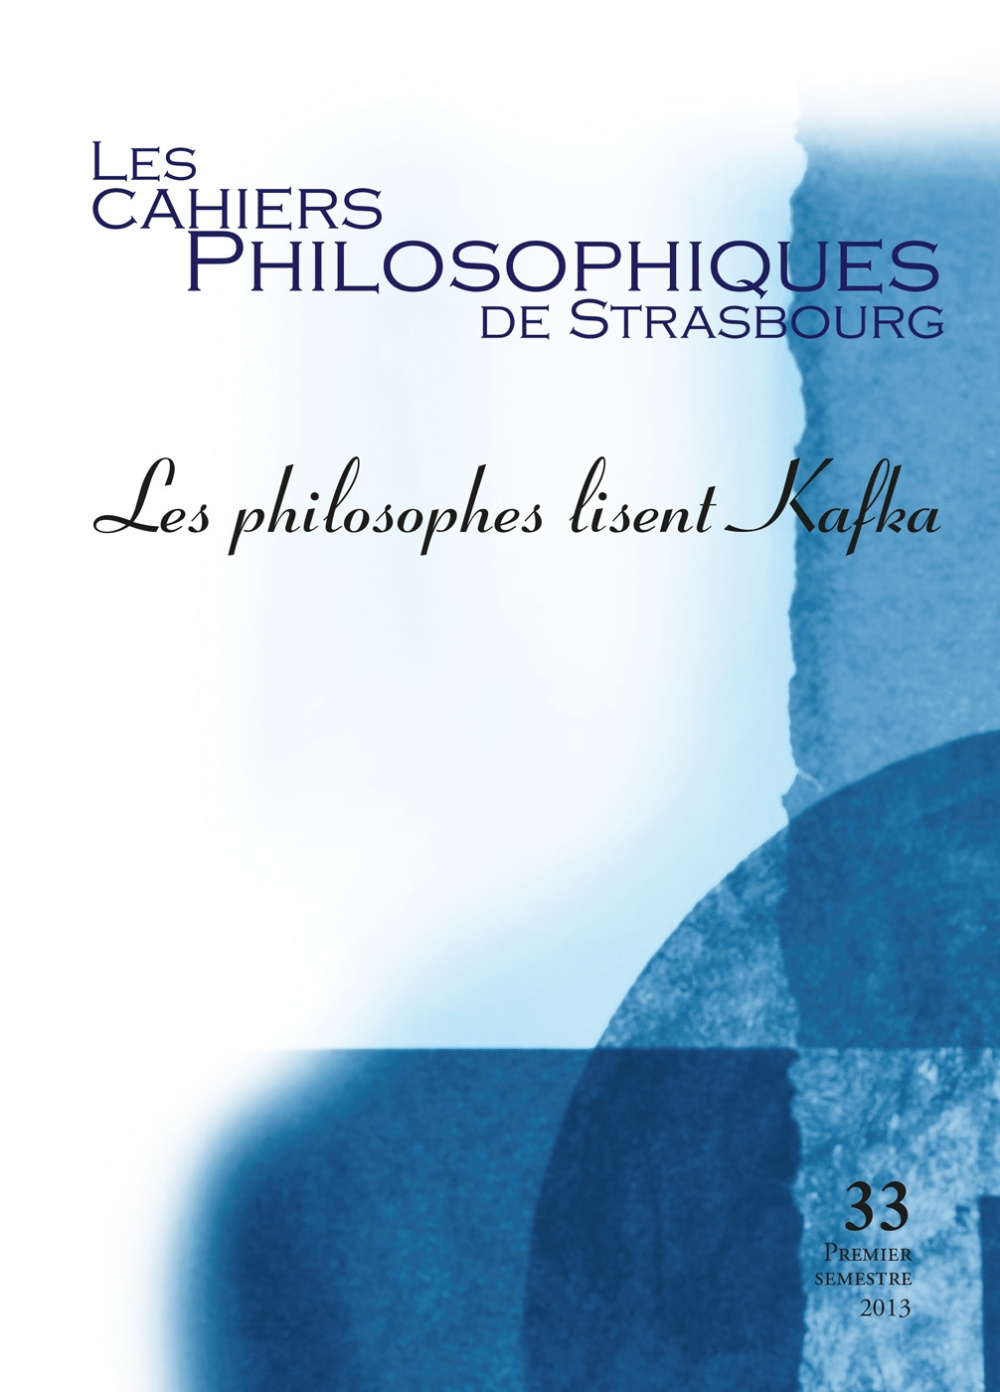 Les Cahiers philosophiques de Strasbourg n°33/2013